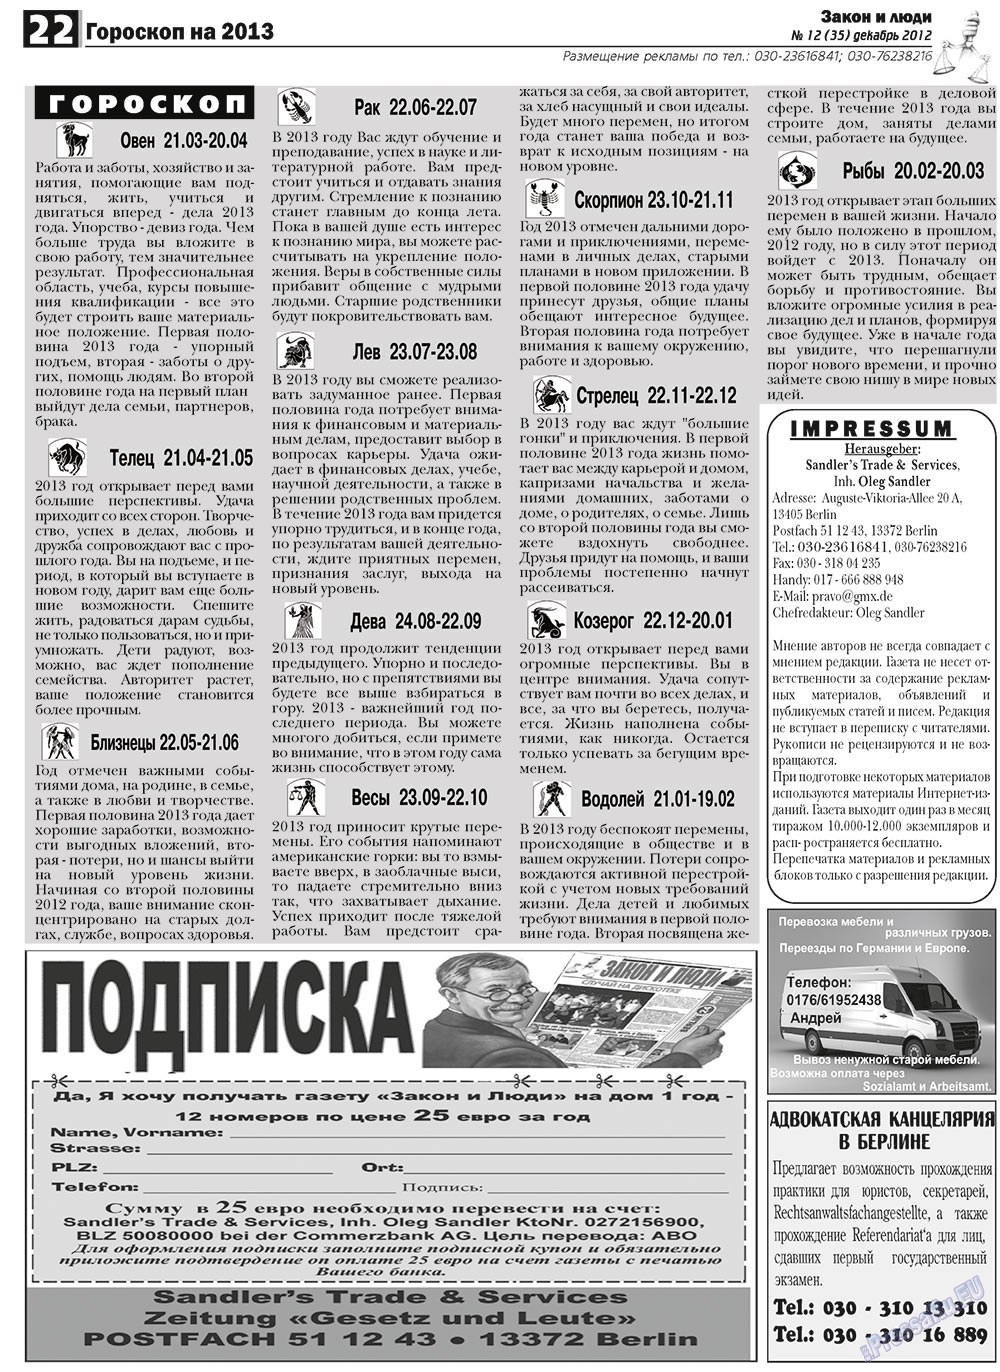 Закон и люди, газета. 2012 №12 стр.22